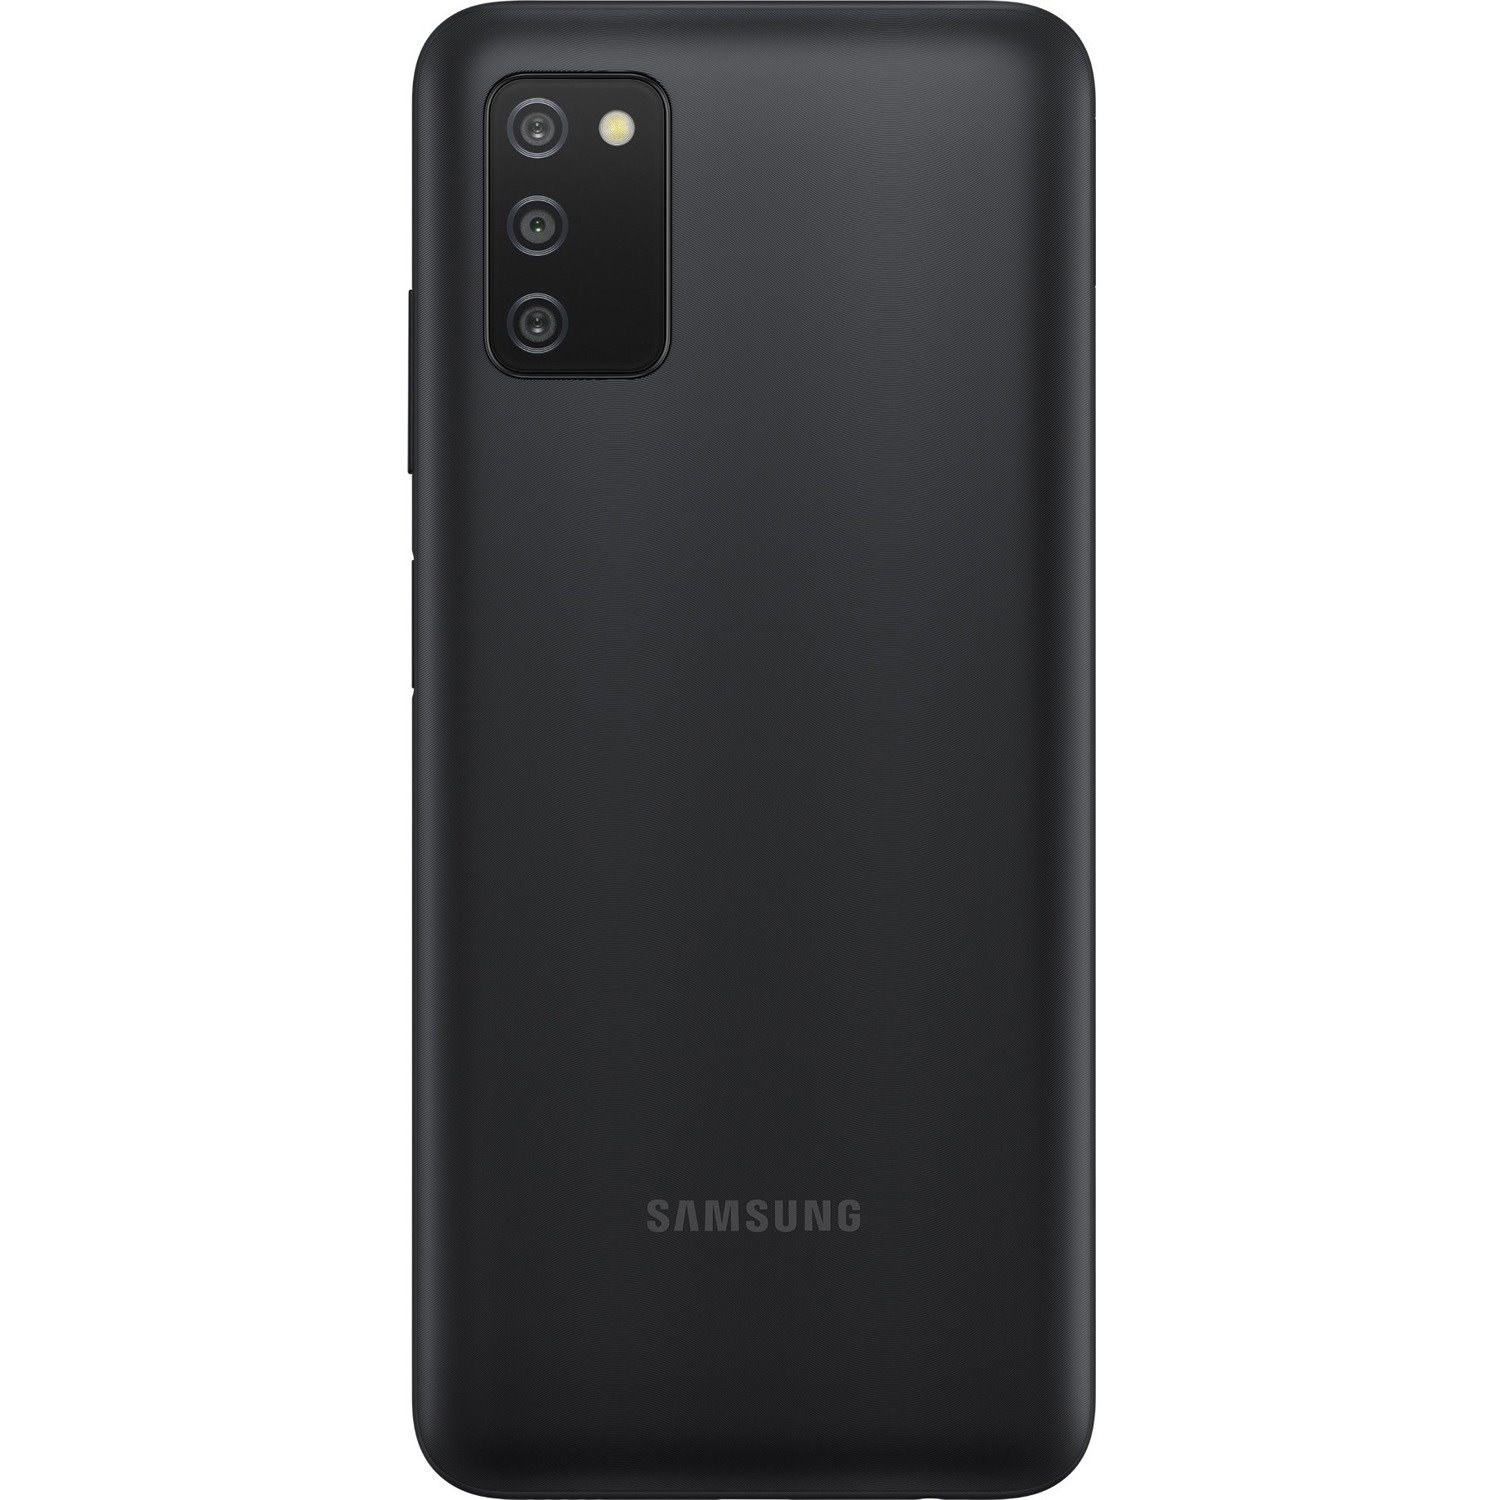 Samsung Galaxy A03s 32 GB Smartphone - 6.5" TFT LCD HD+ 720 x 1600 - Octa-core (Cortex A53Quad-core (4 Core) 2.35 GHz + Cortex A53 Quad-core (4 Core) 1.80 GHz - 3 GB RAM - Android 11 - 4G - Black